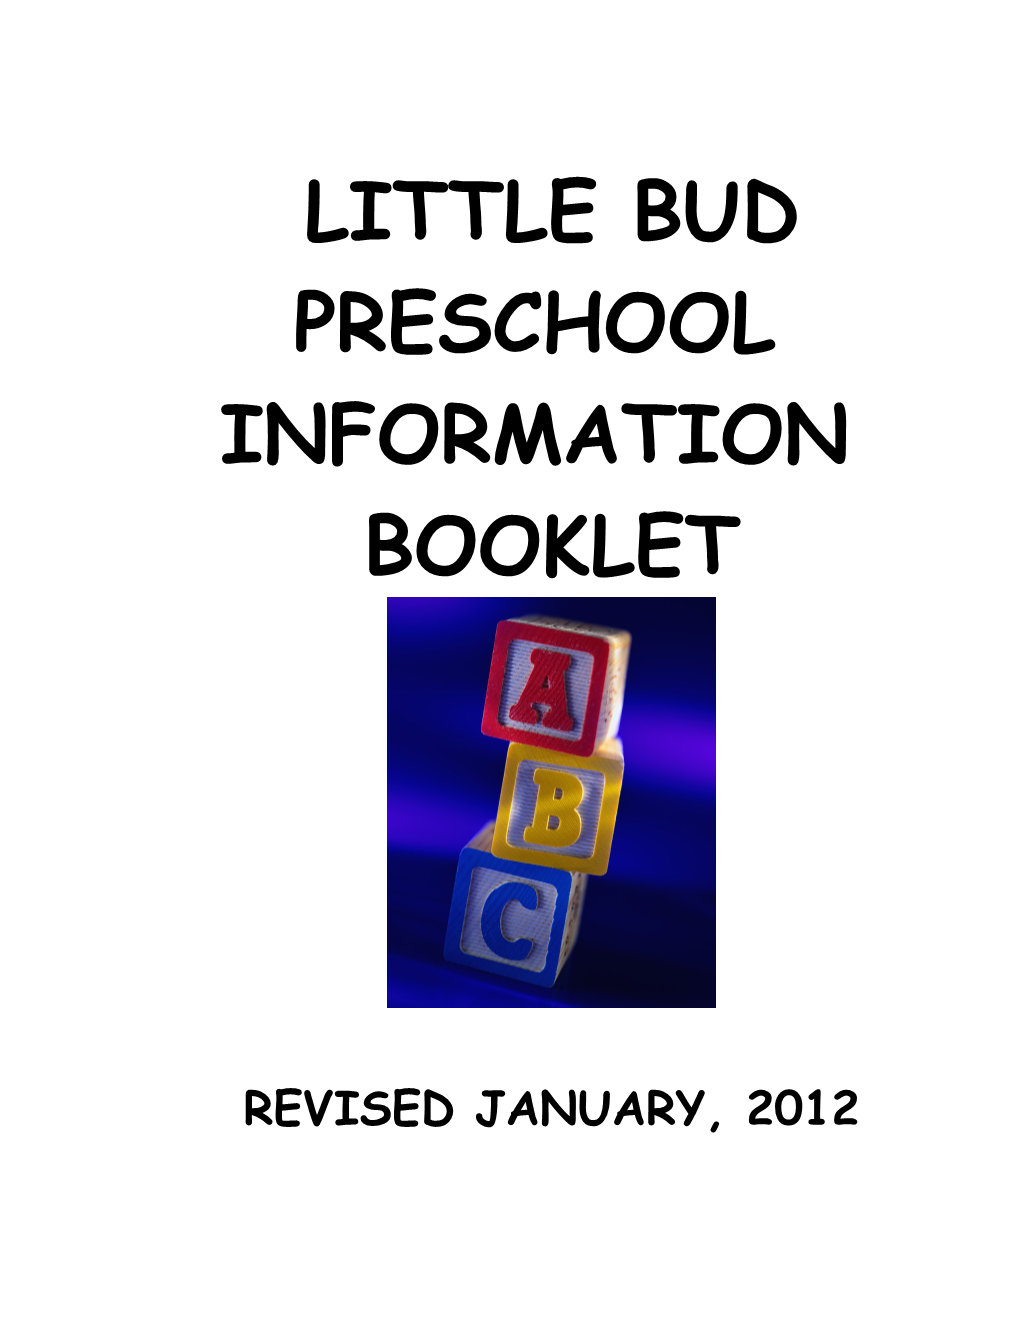 Little Bud Preschool